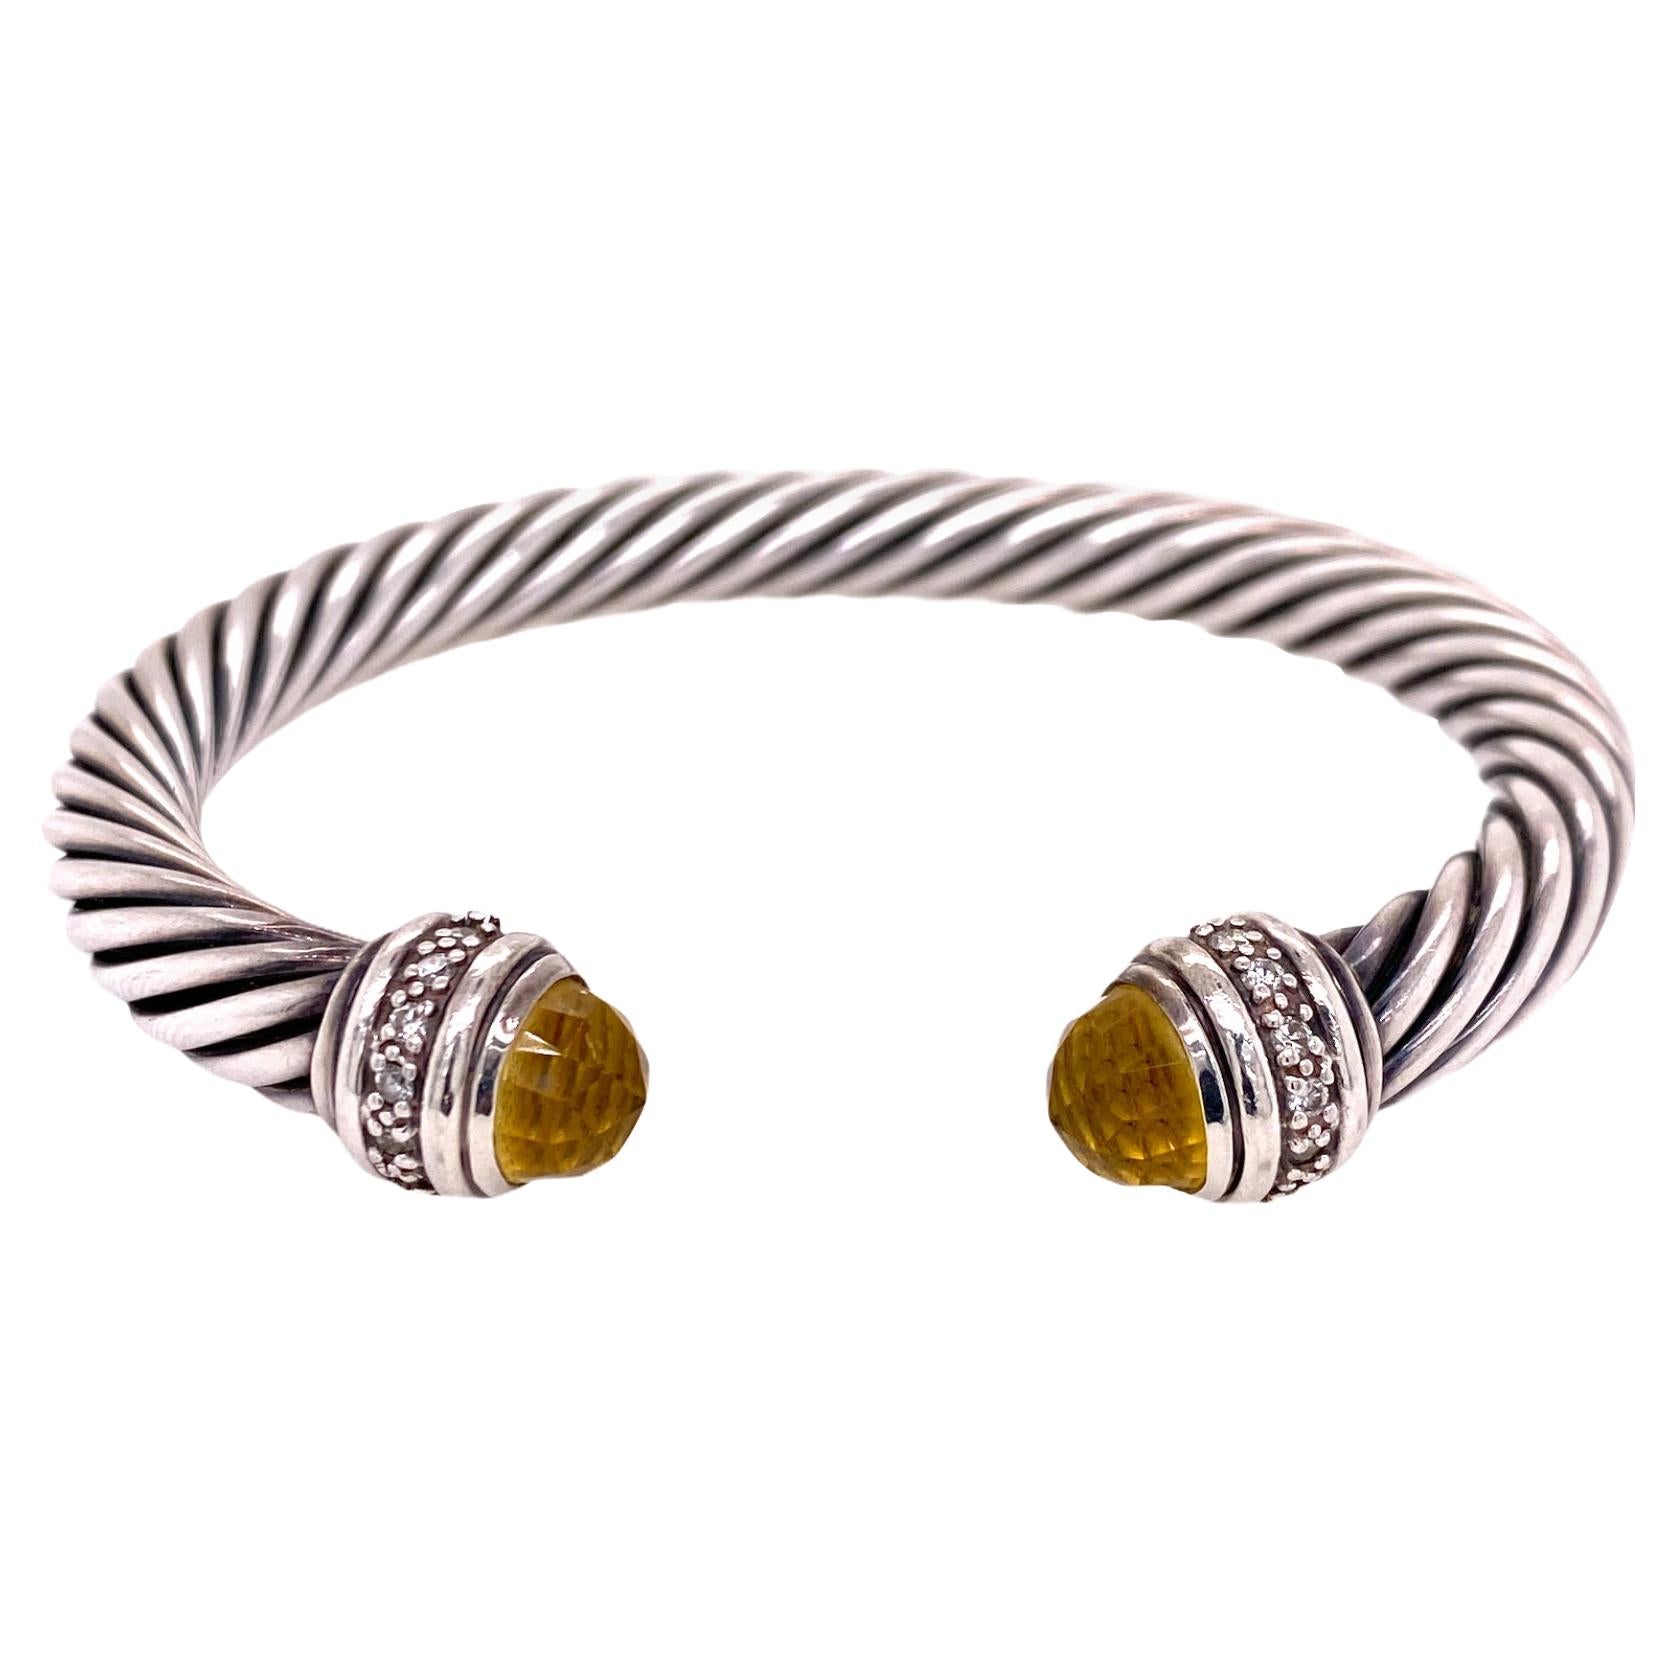 STERLING SILVER CUFF BRACELET - Argo & Lehne Jewelers